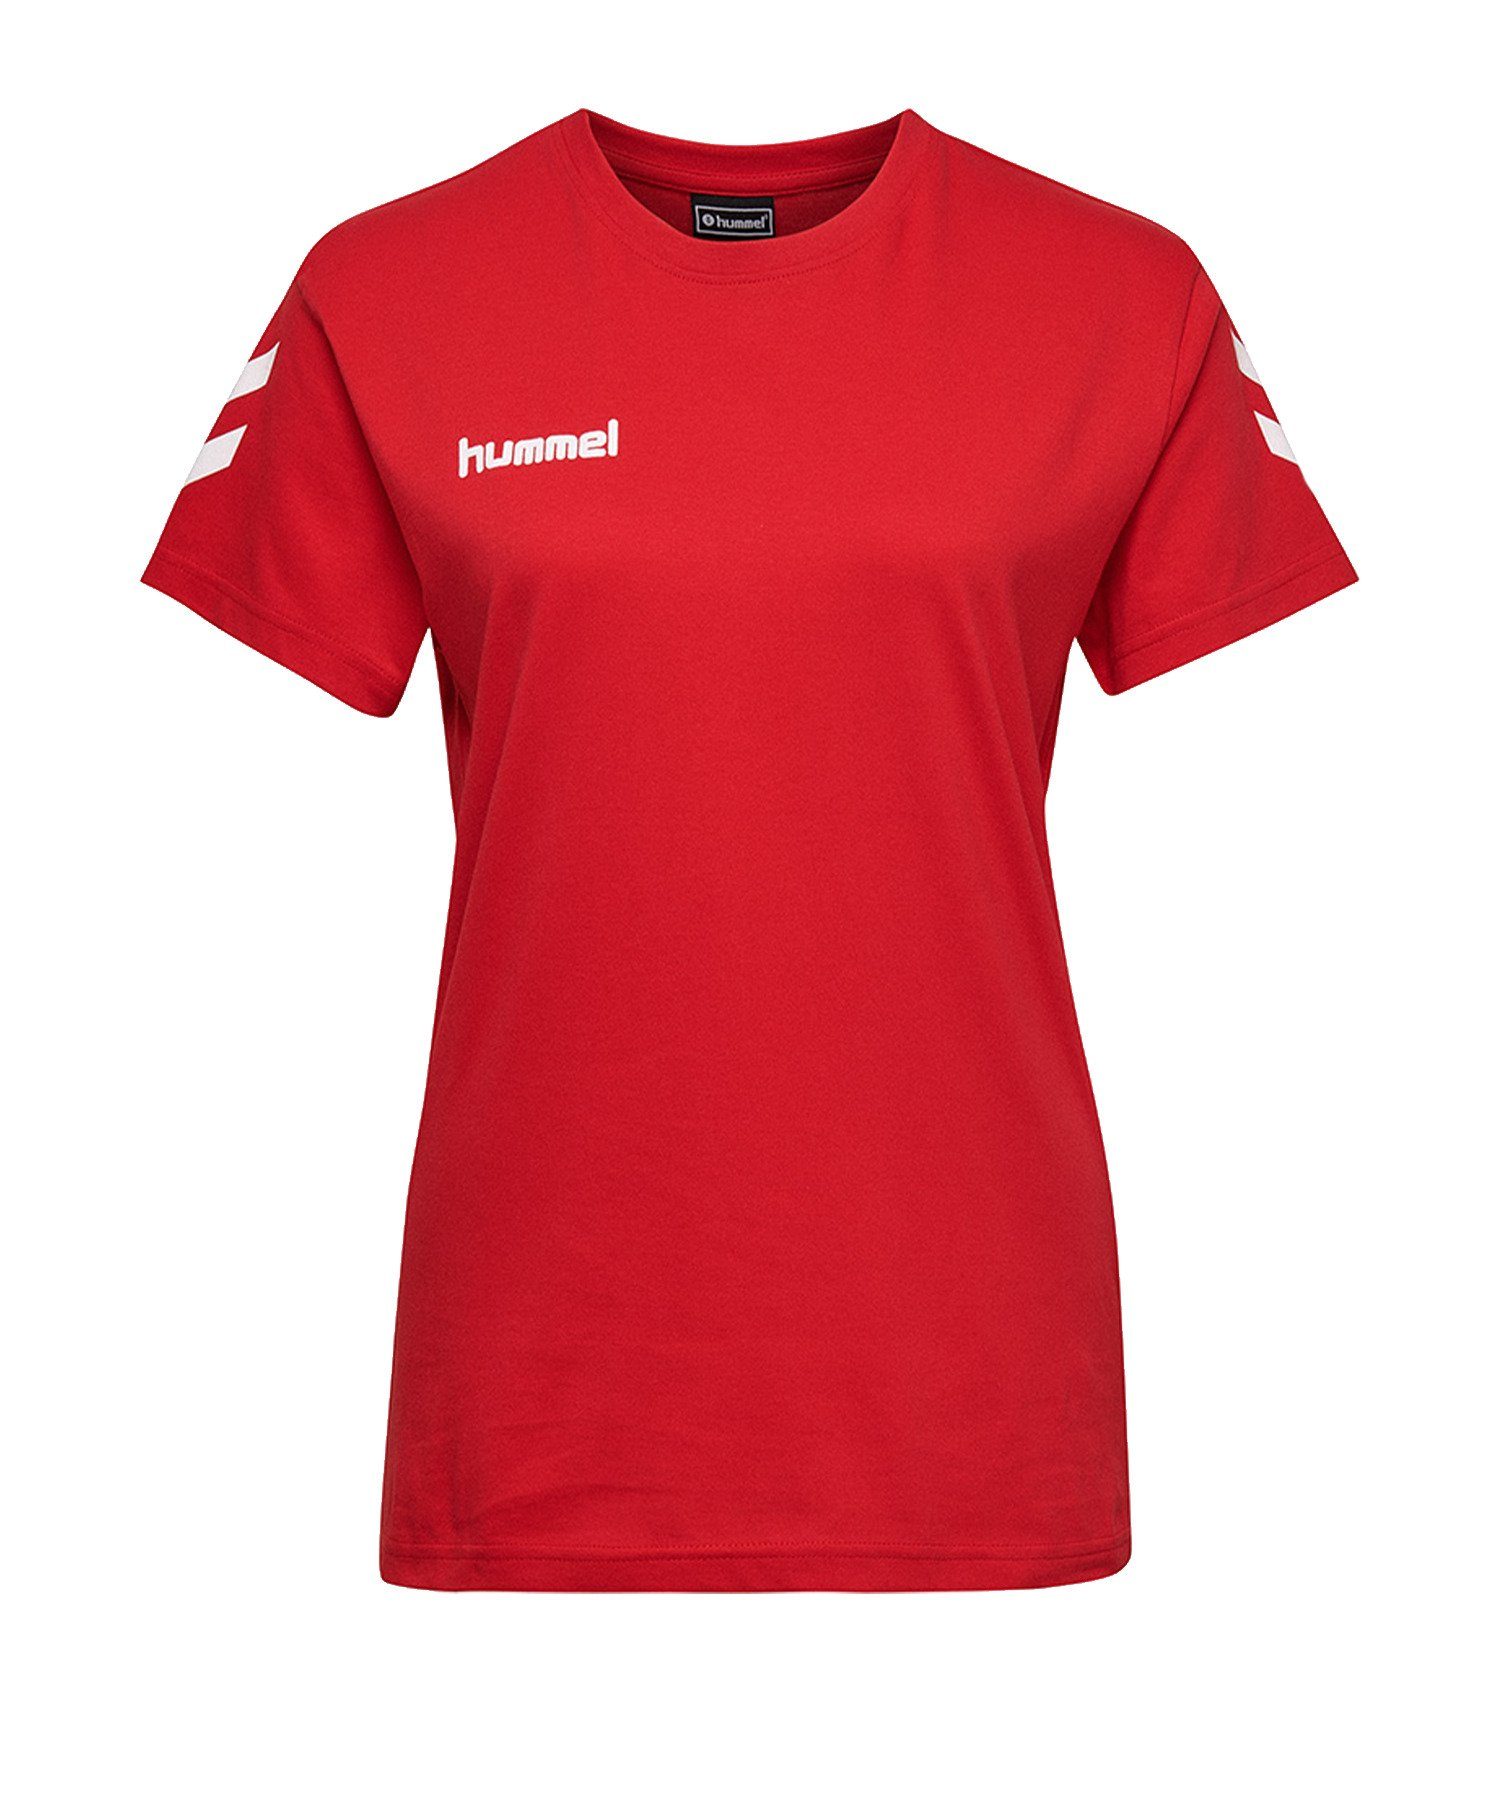 T-Shirt Rot Damen Cotton hummel default T-Shirt